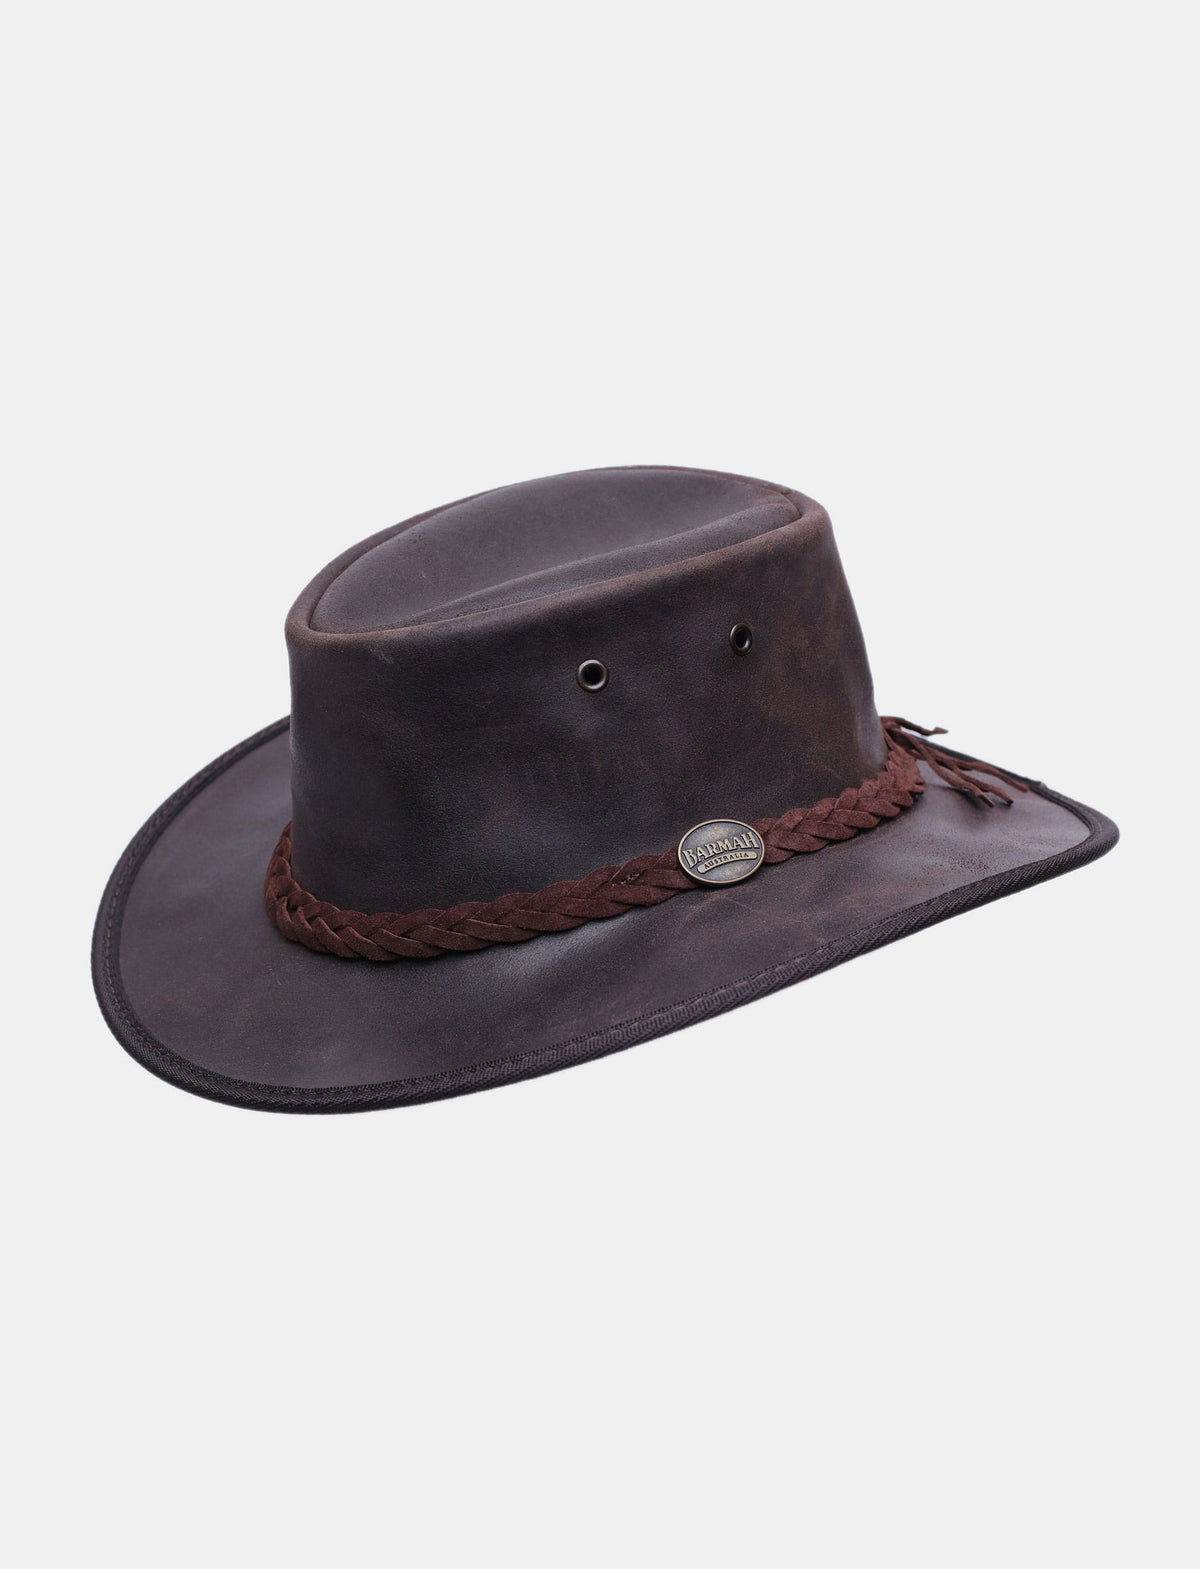 Barmah - כובע בוקרים רחב שוליים ברמה מתקפל עמיד במים עשוי מעור בקר-Barmah-S-נאקו